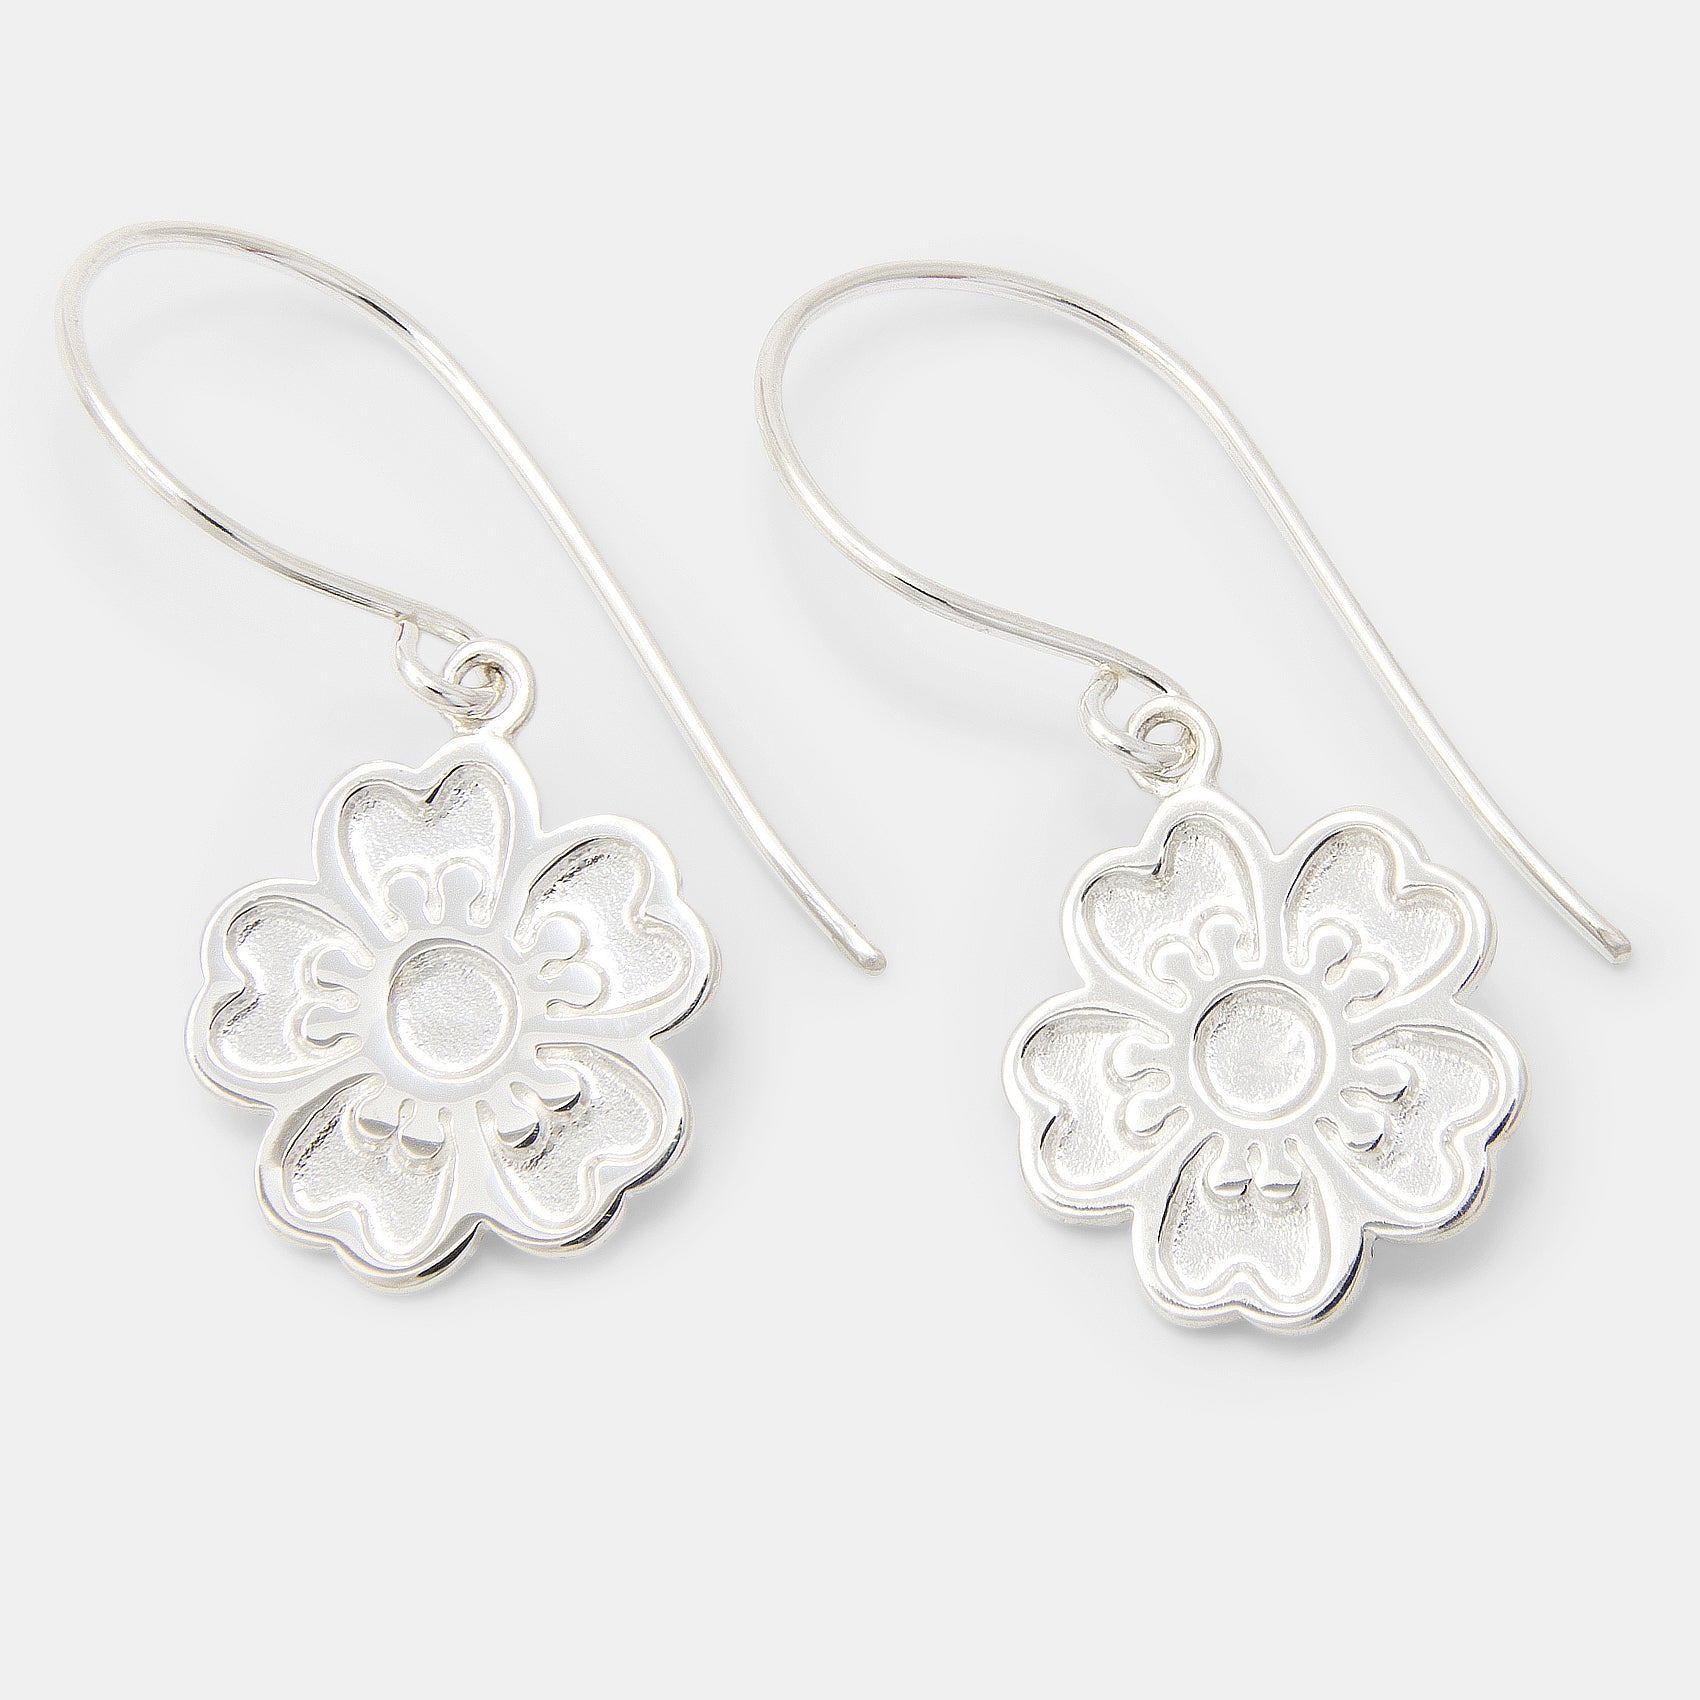 Guinea Flower Silver Drop Earrings - Simone Walsh Jewellery Australia